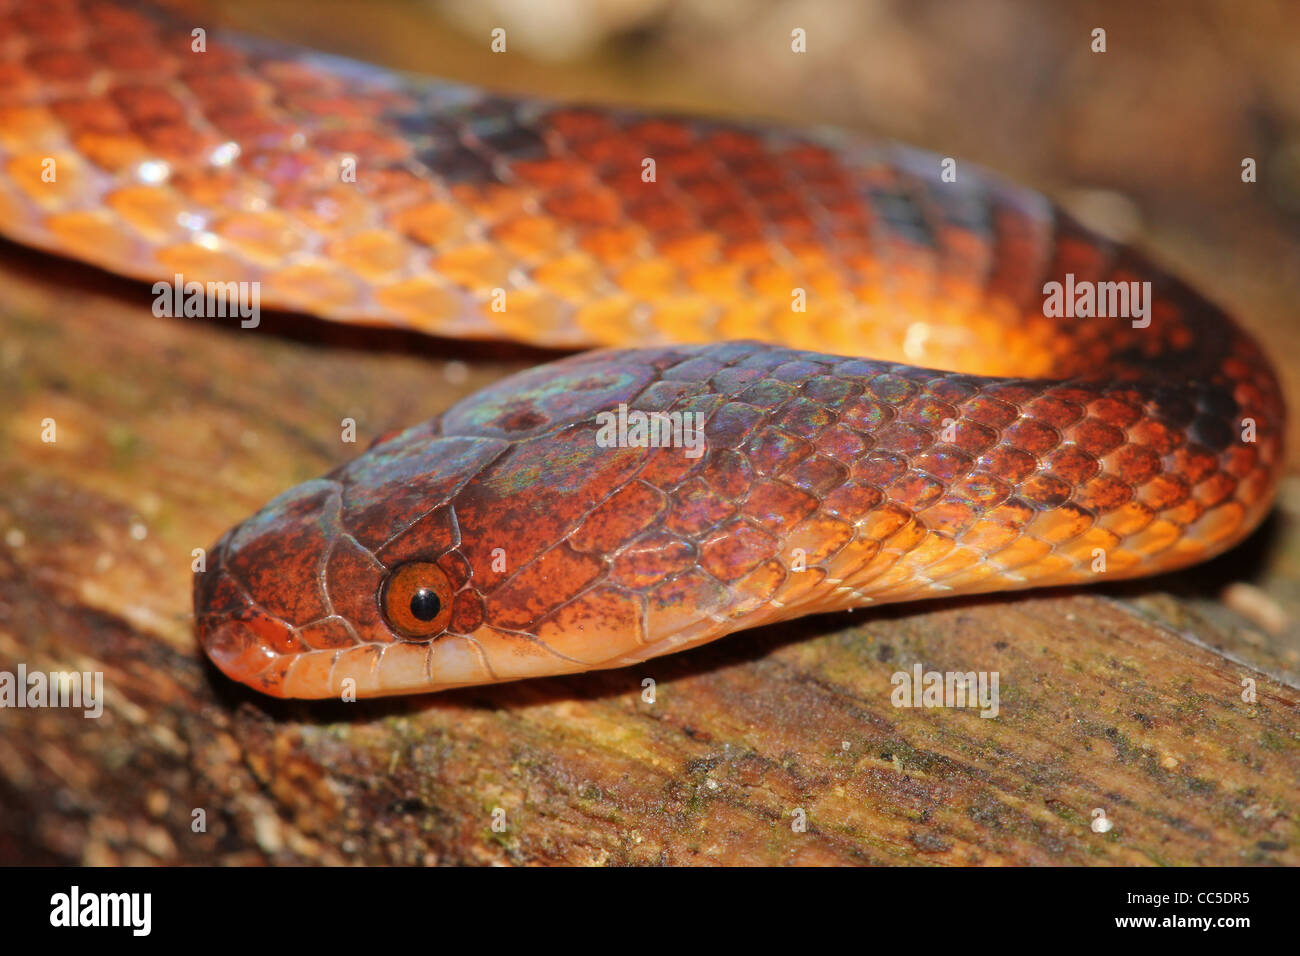 A Wucherer's Ground Snake (Xenopholis scalaris) in the Peruvian Amazon Stock Photo